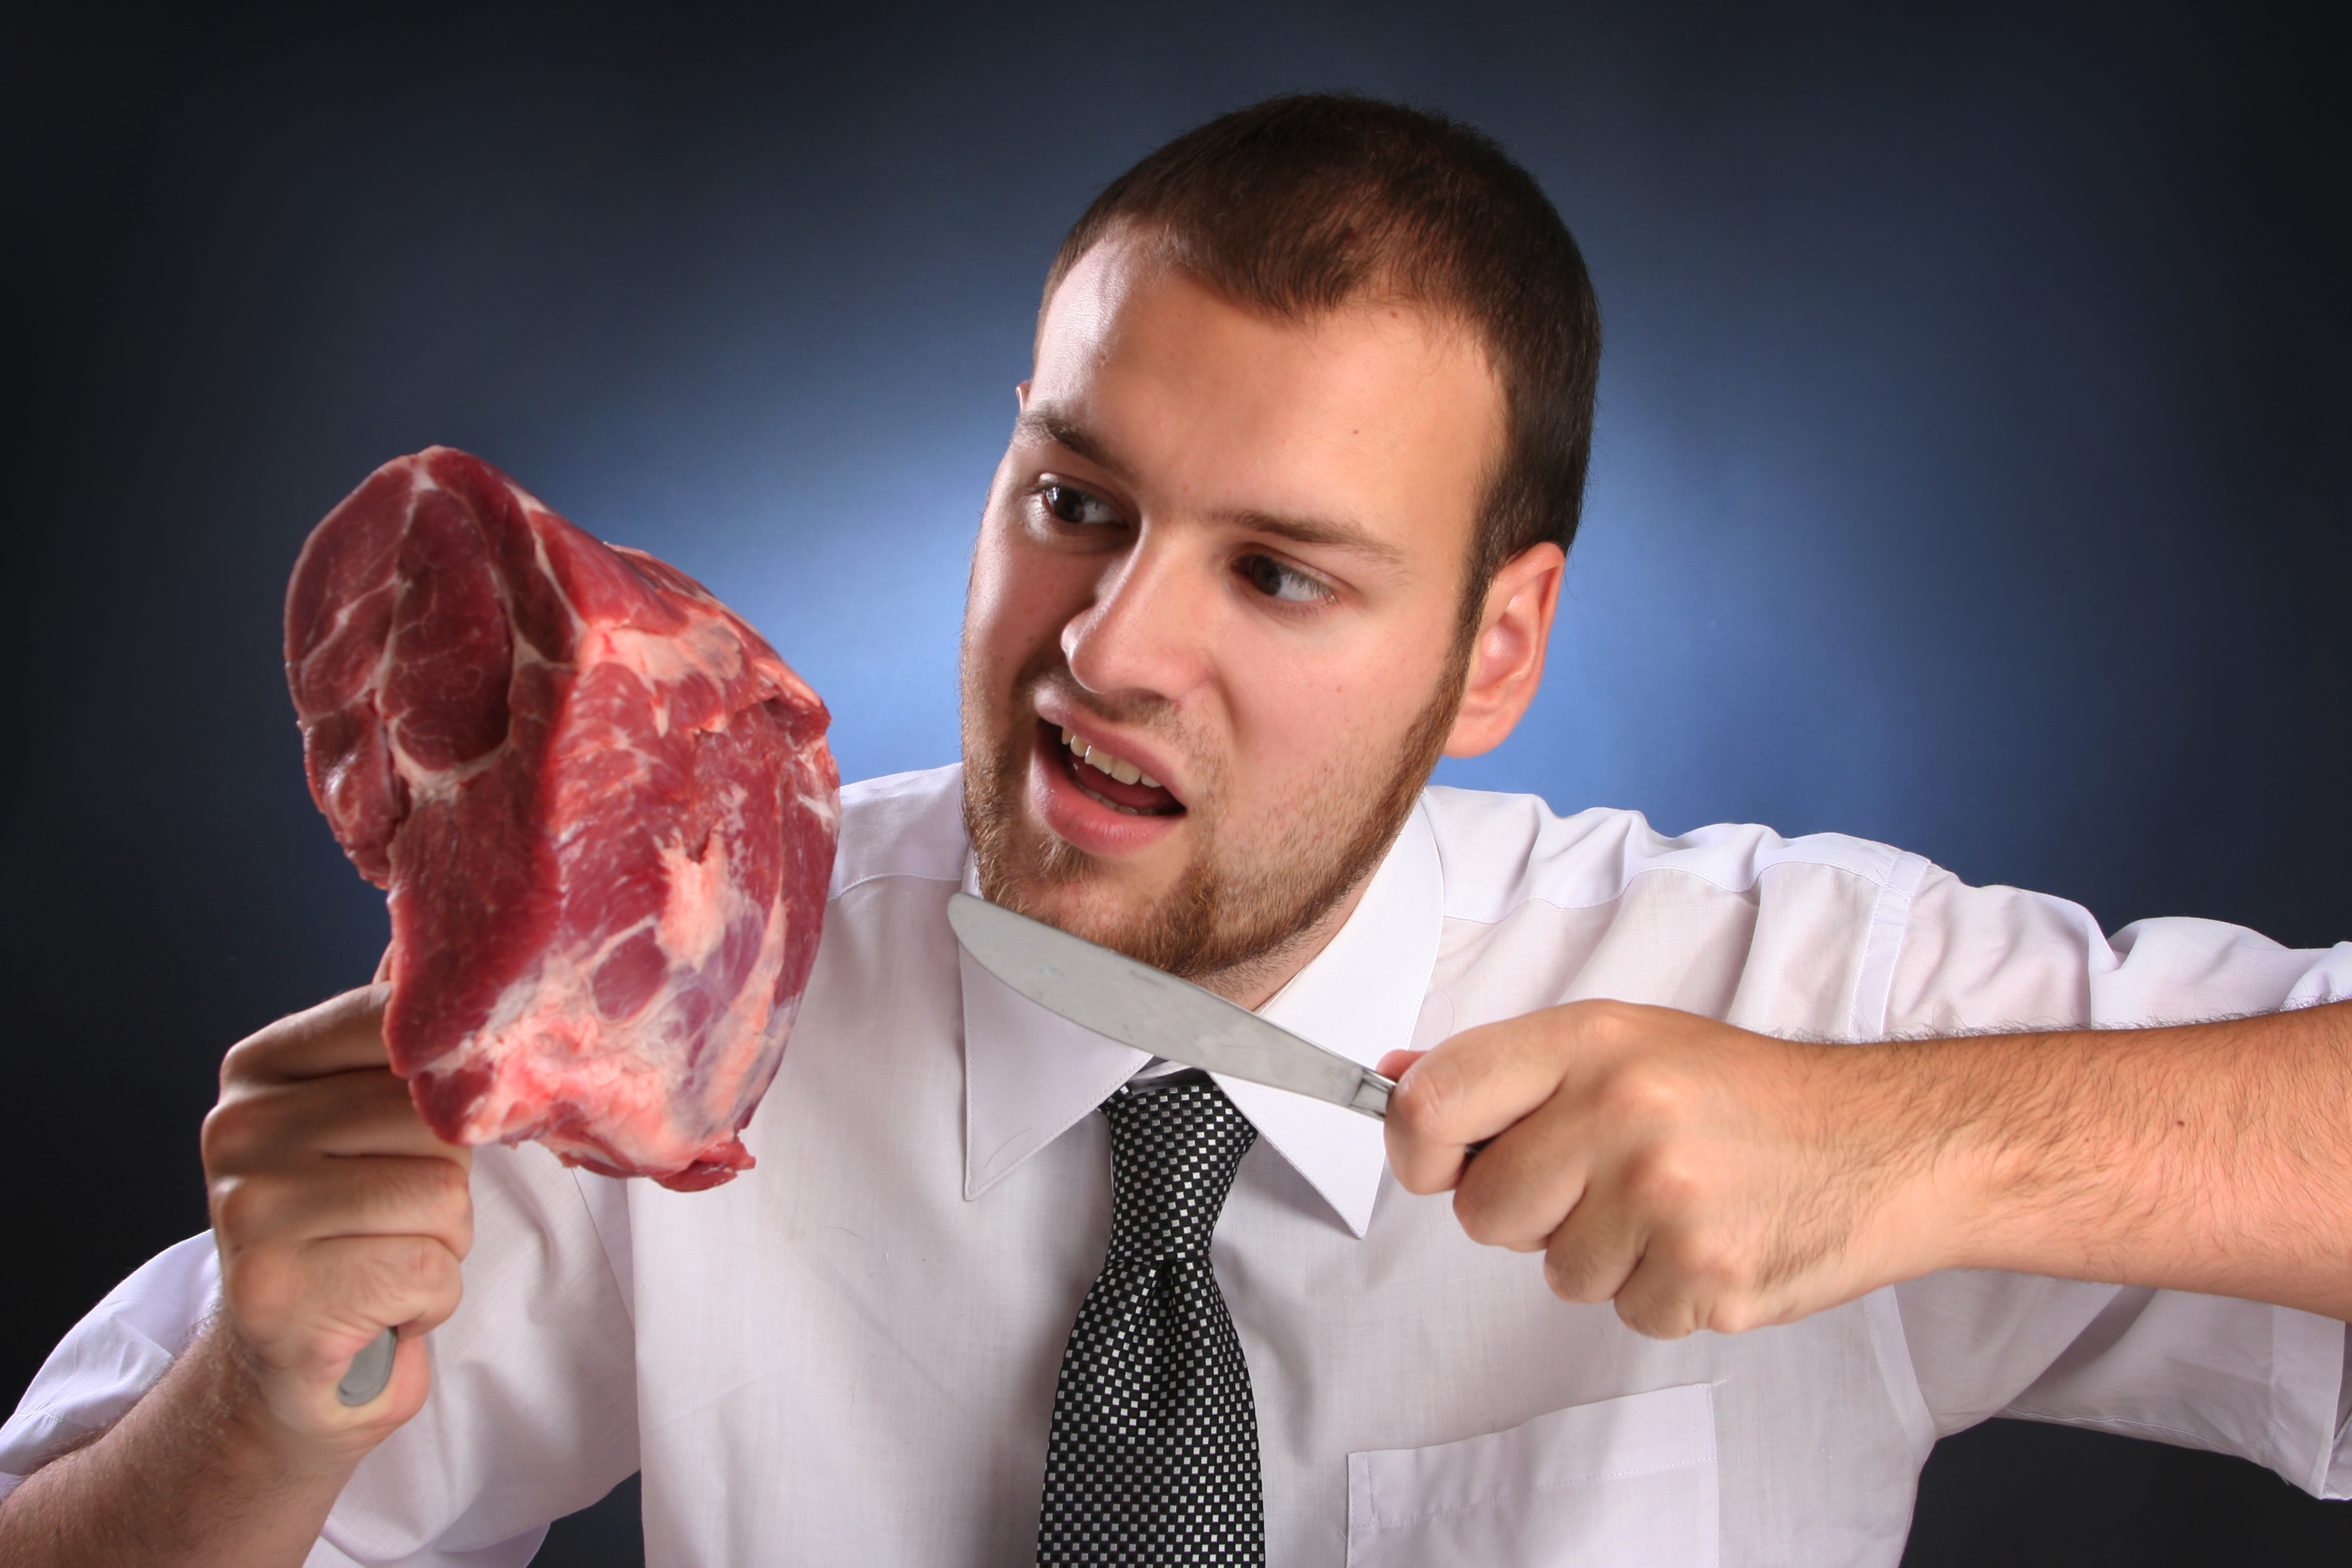 Մսի շուկայում հայտնաբերվել է անհայտ ծագման 880կգ միս